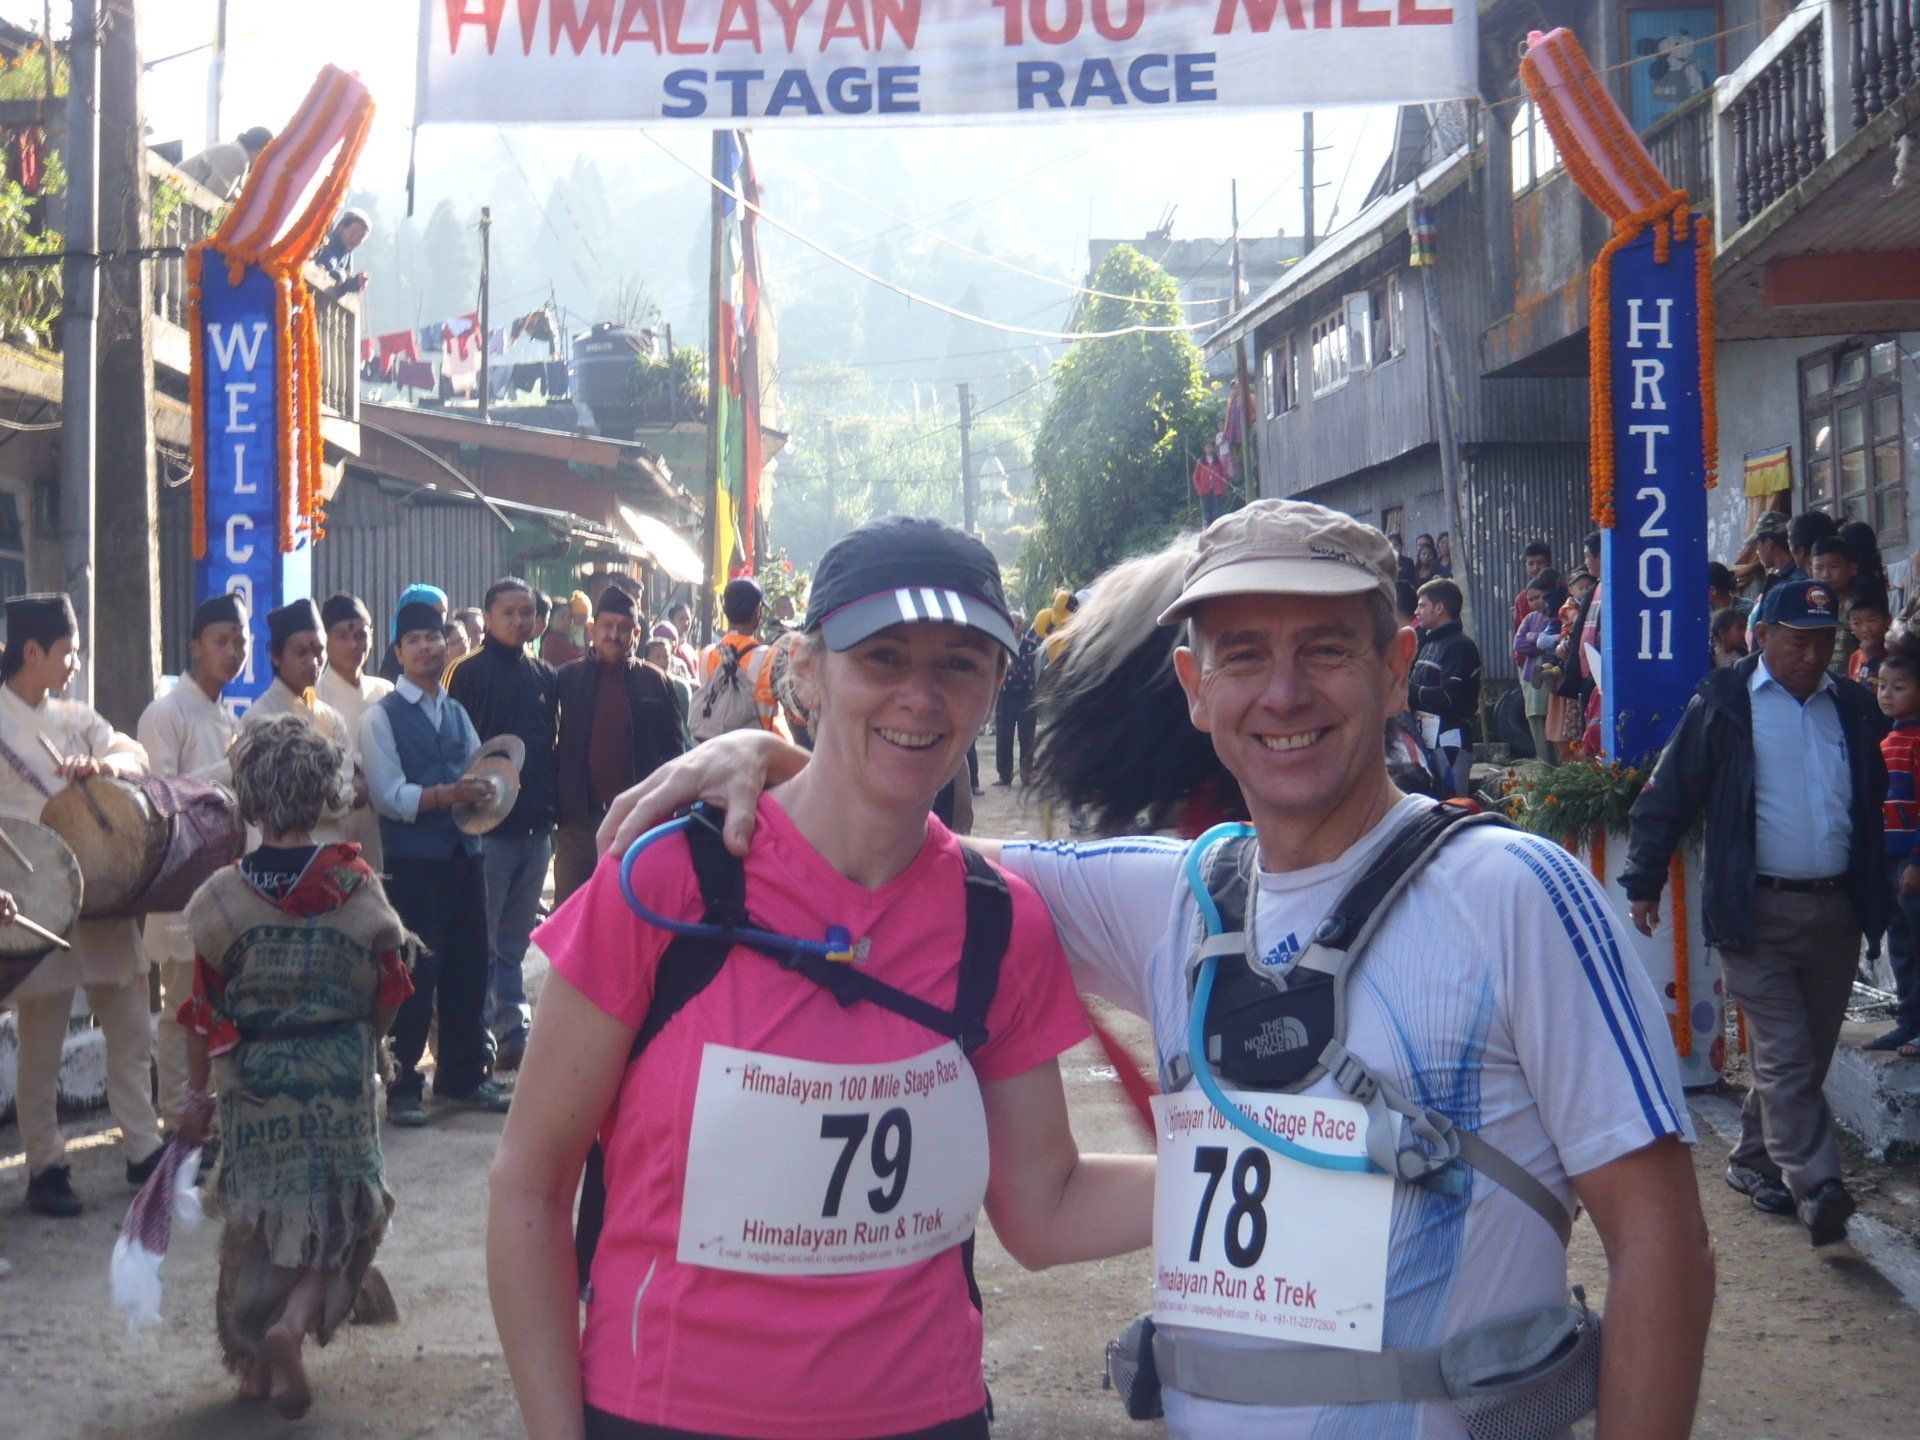 Himalayan 100 mile race, India